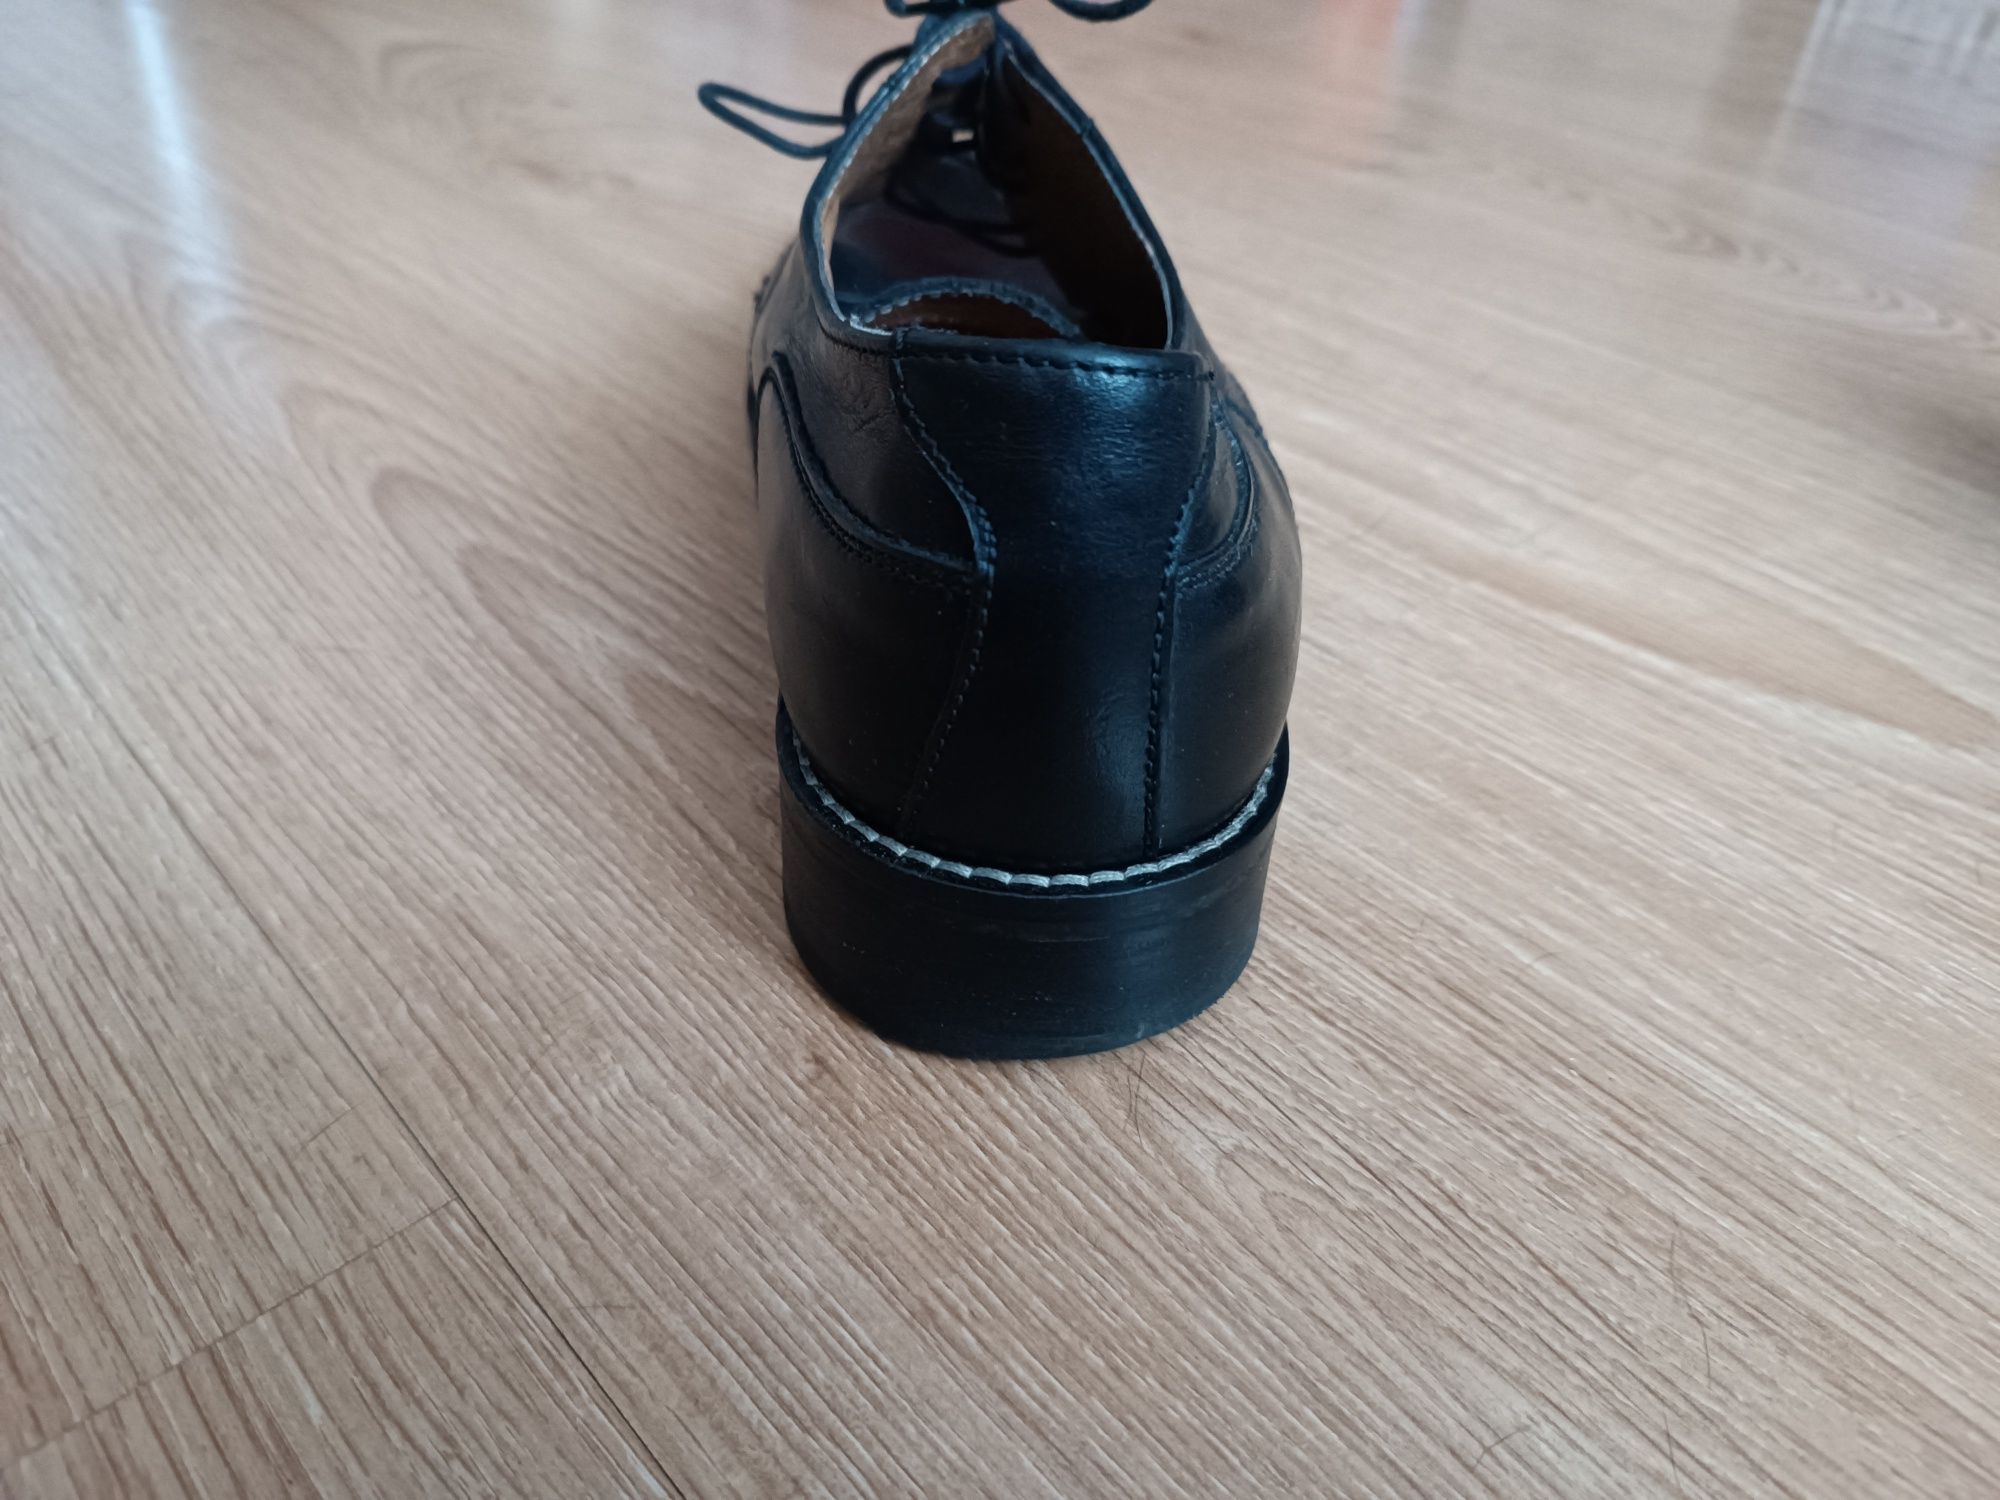 Skórzane buty męskie na skórze - firmy L.LAMBERTAZZI roz.44